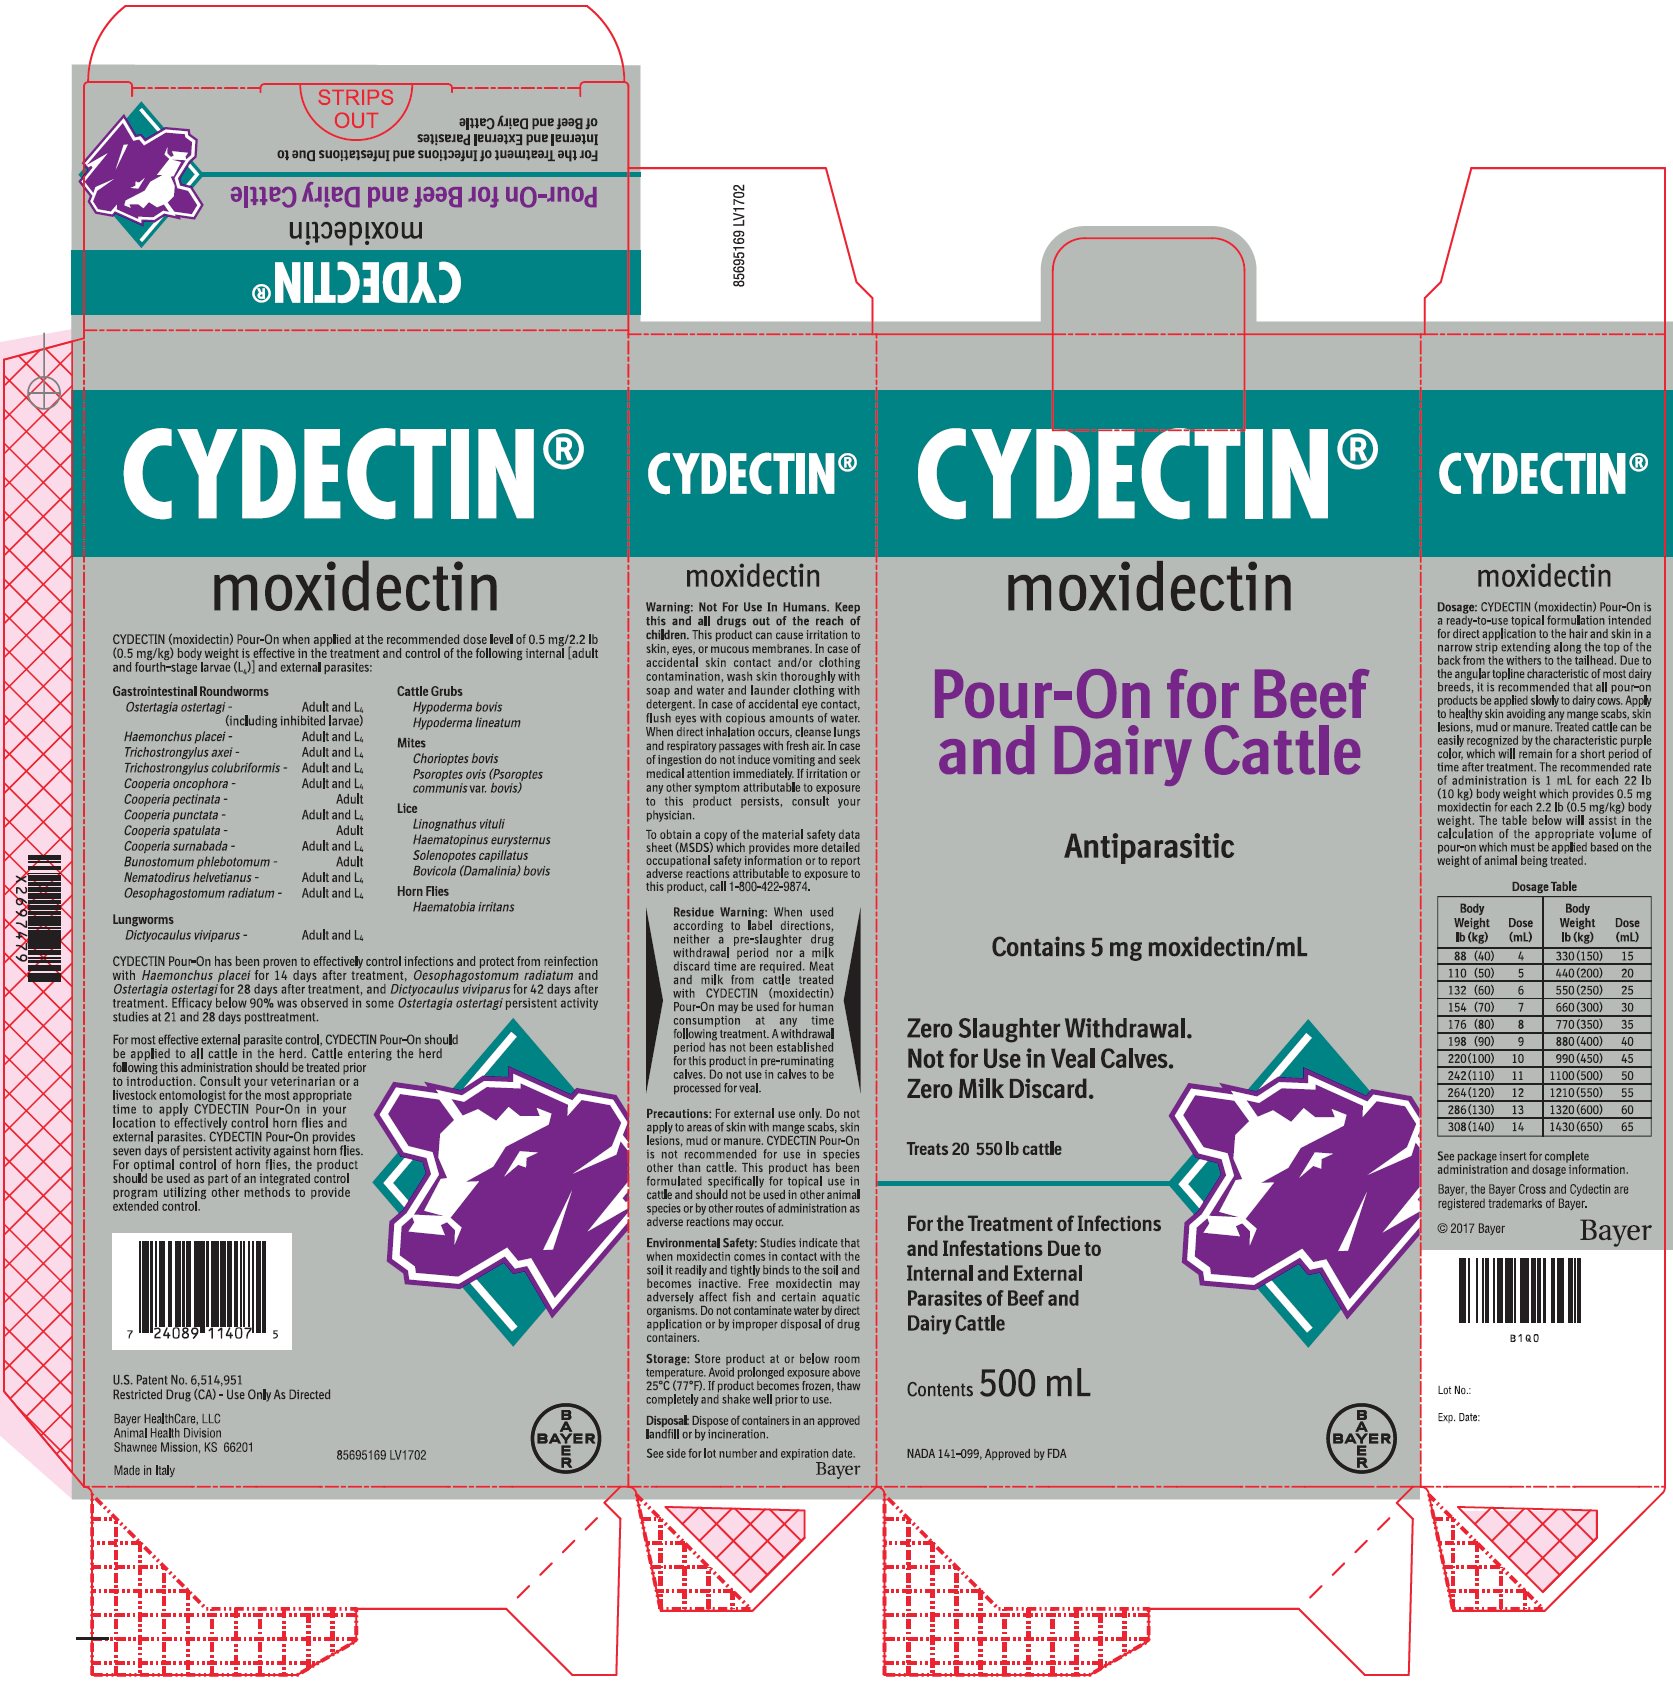 Cydectin (moxidectin) back unit label